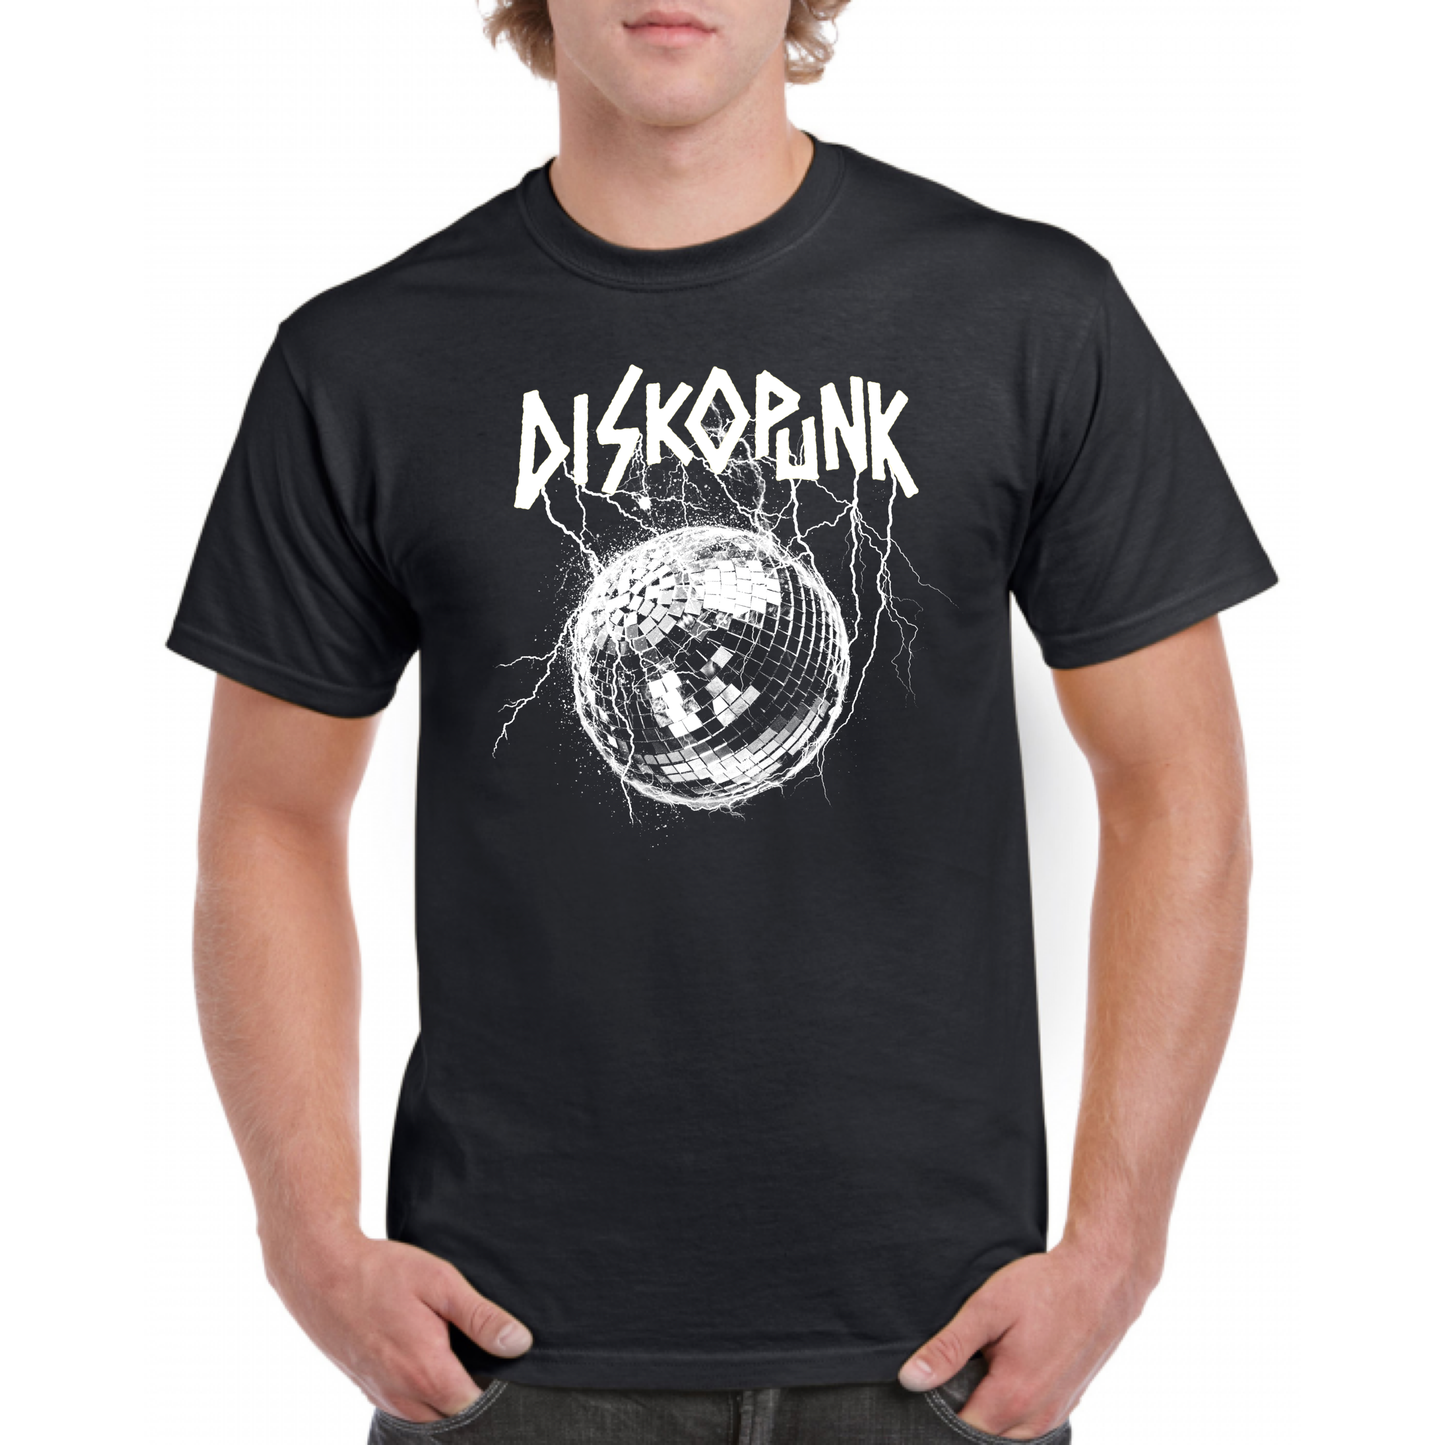 Diskopunk Black T-shirt